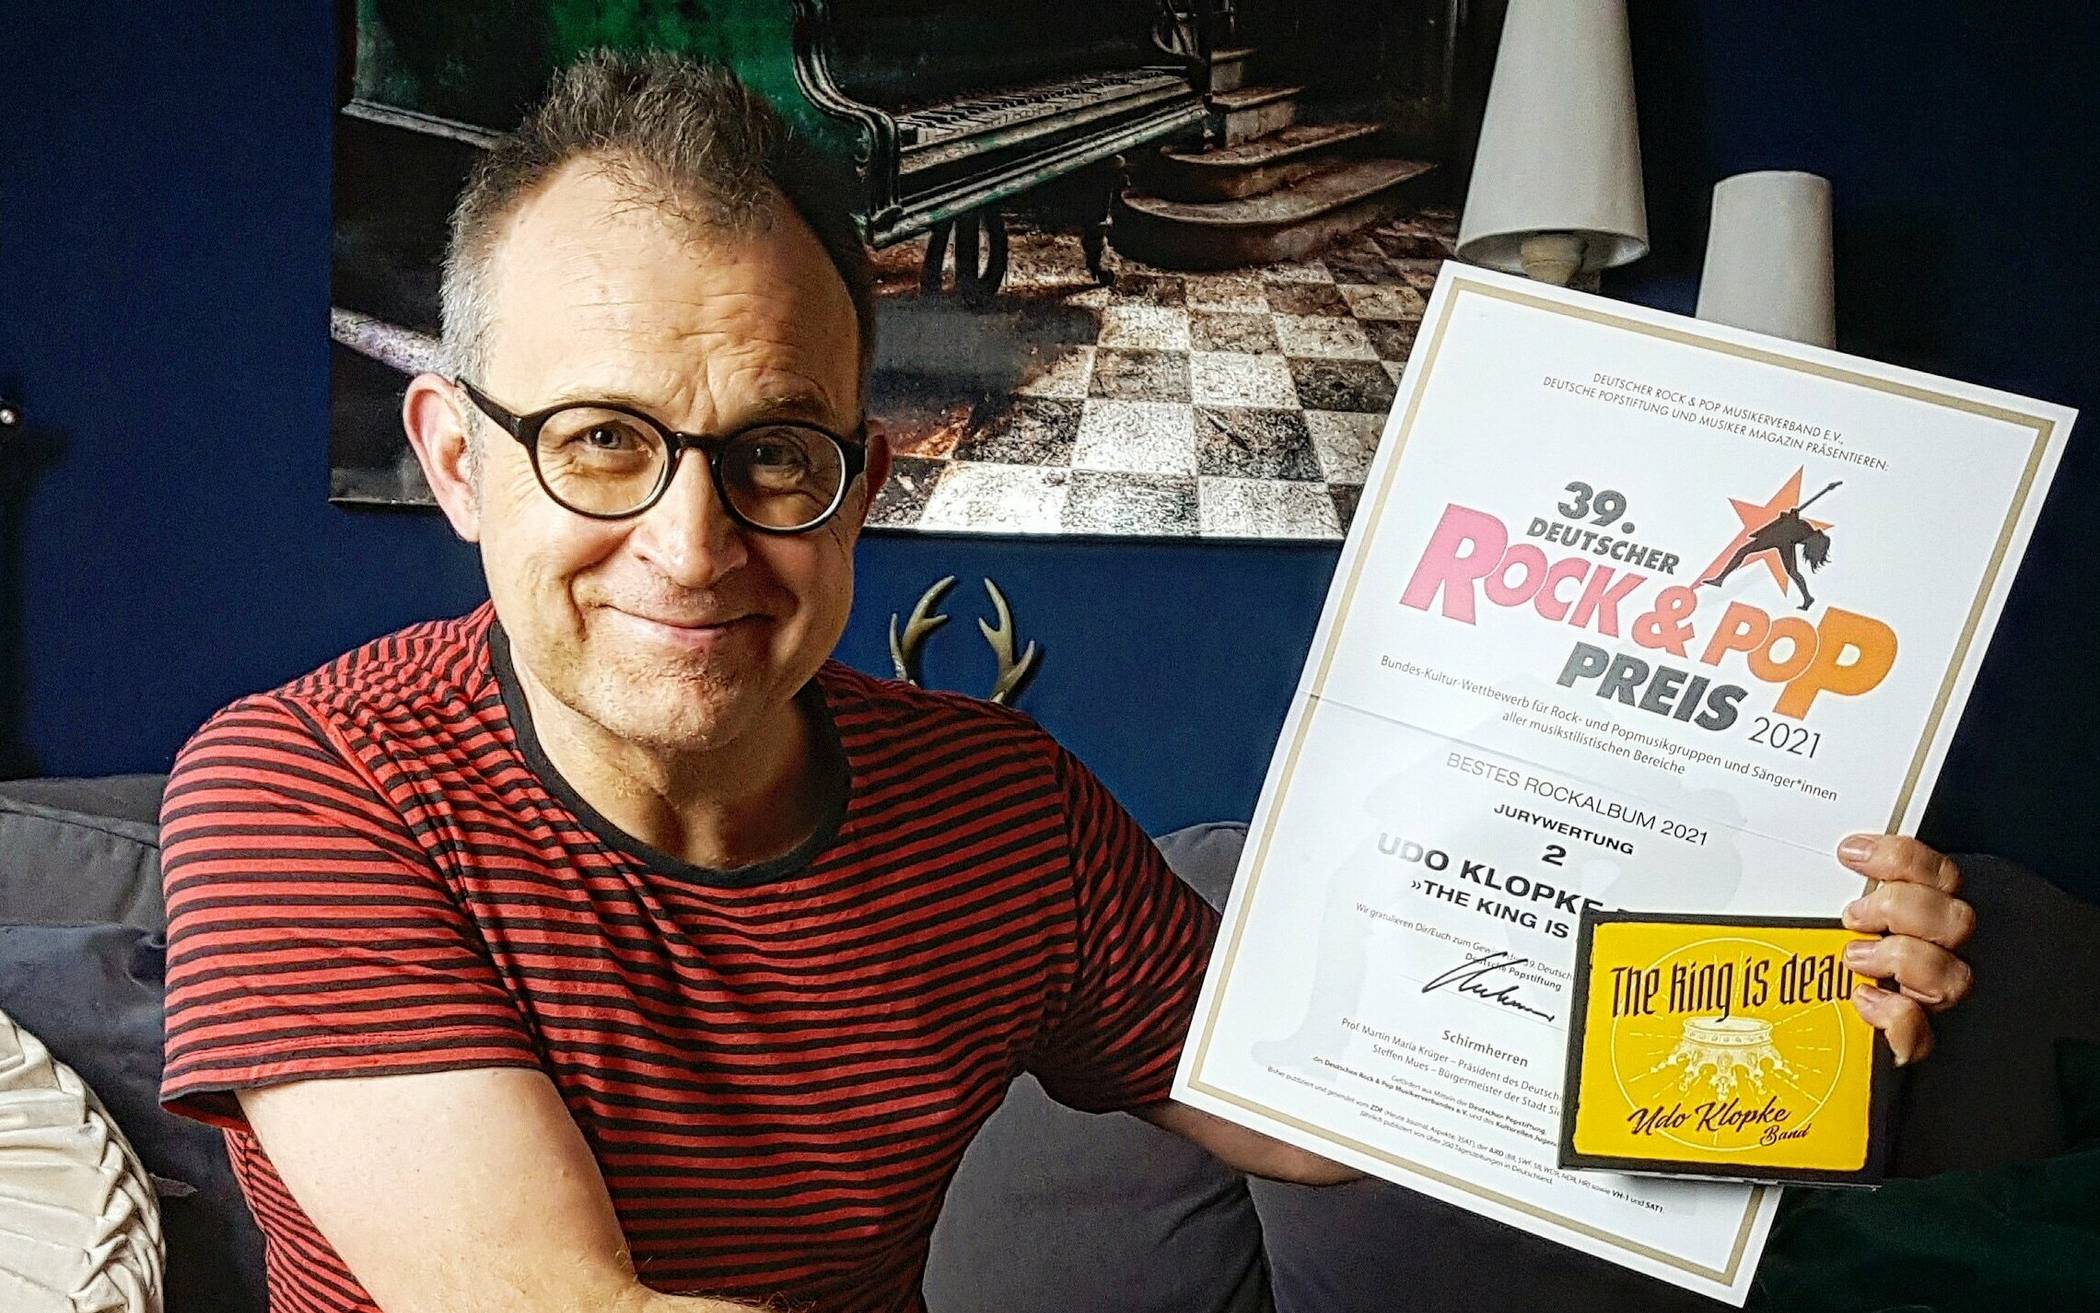  Das neue Album „The King is dead“ der Udo Klopke Band hat beim 39. Deutschen Rock und Pop Preis den 2. Platz in der Kategorie „Bestes Rockalbum 2021“ gewonnen.  